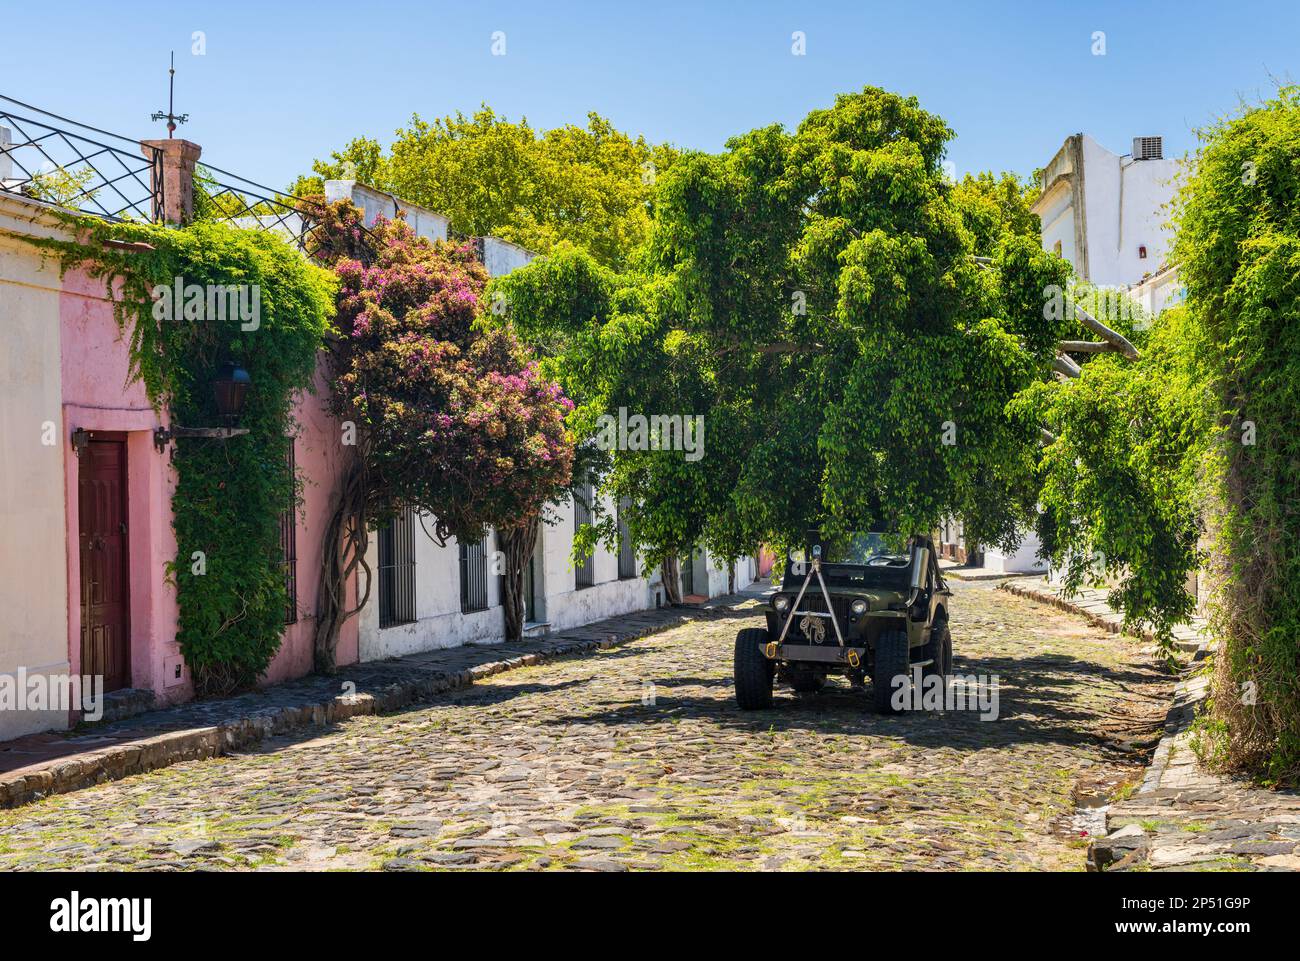 Petite rue pavée avec vieux véhicule à Colonia del Sacramento Uruguay Banque D'Images